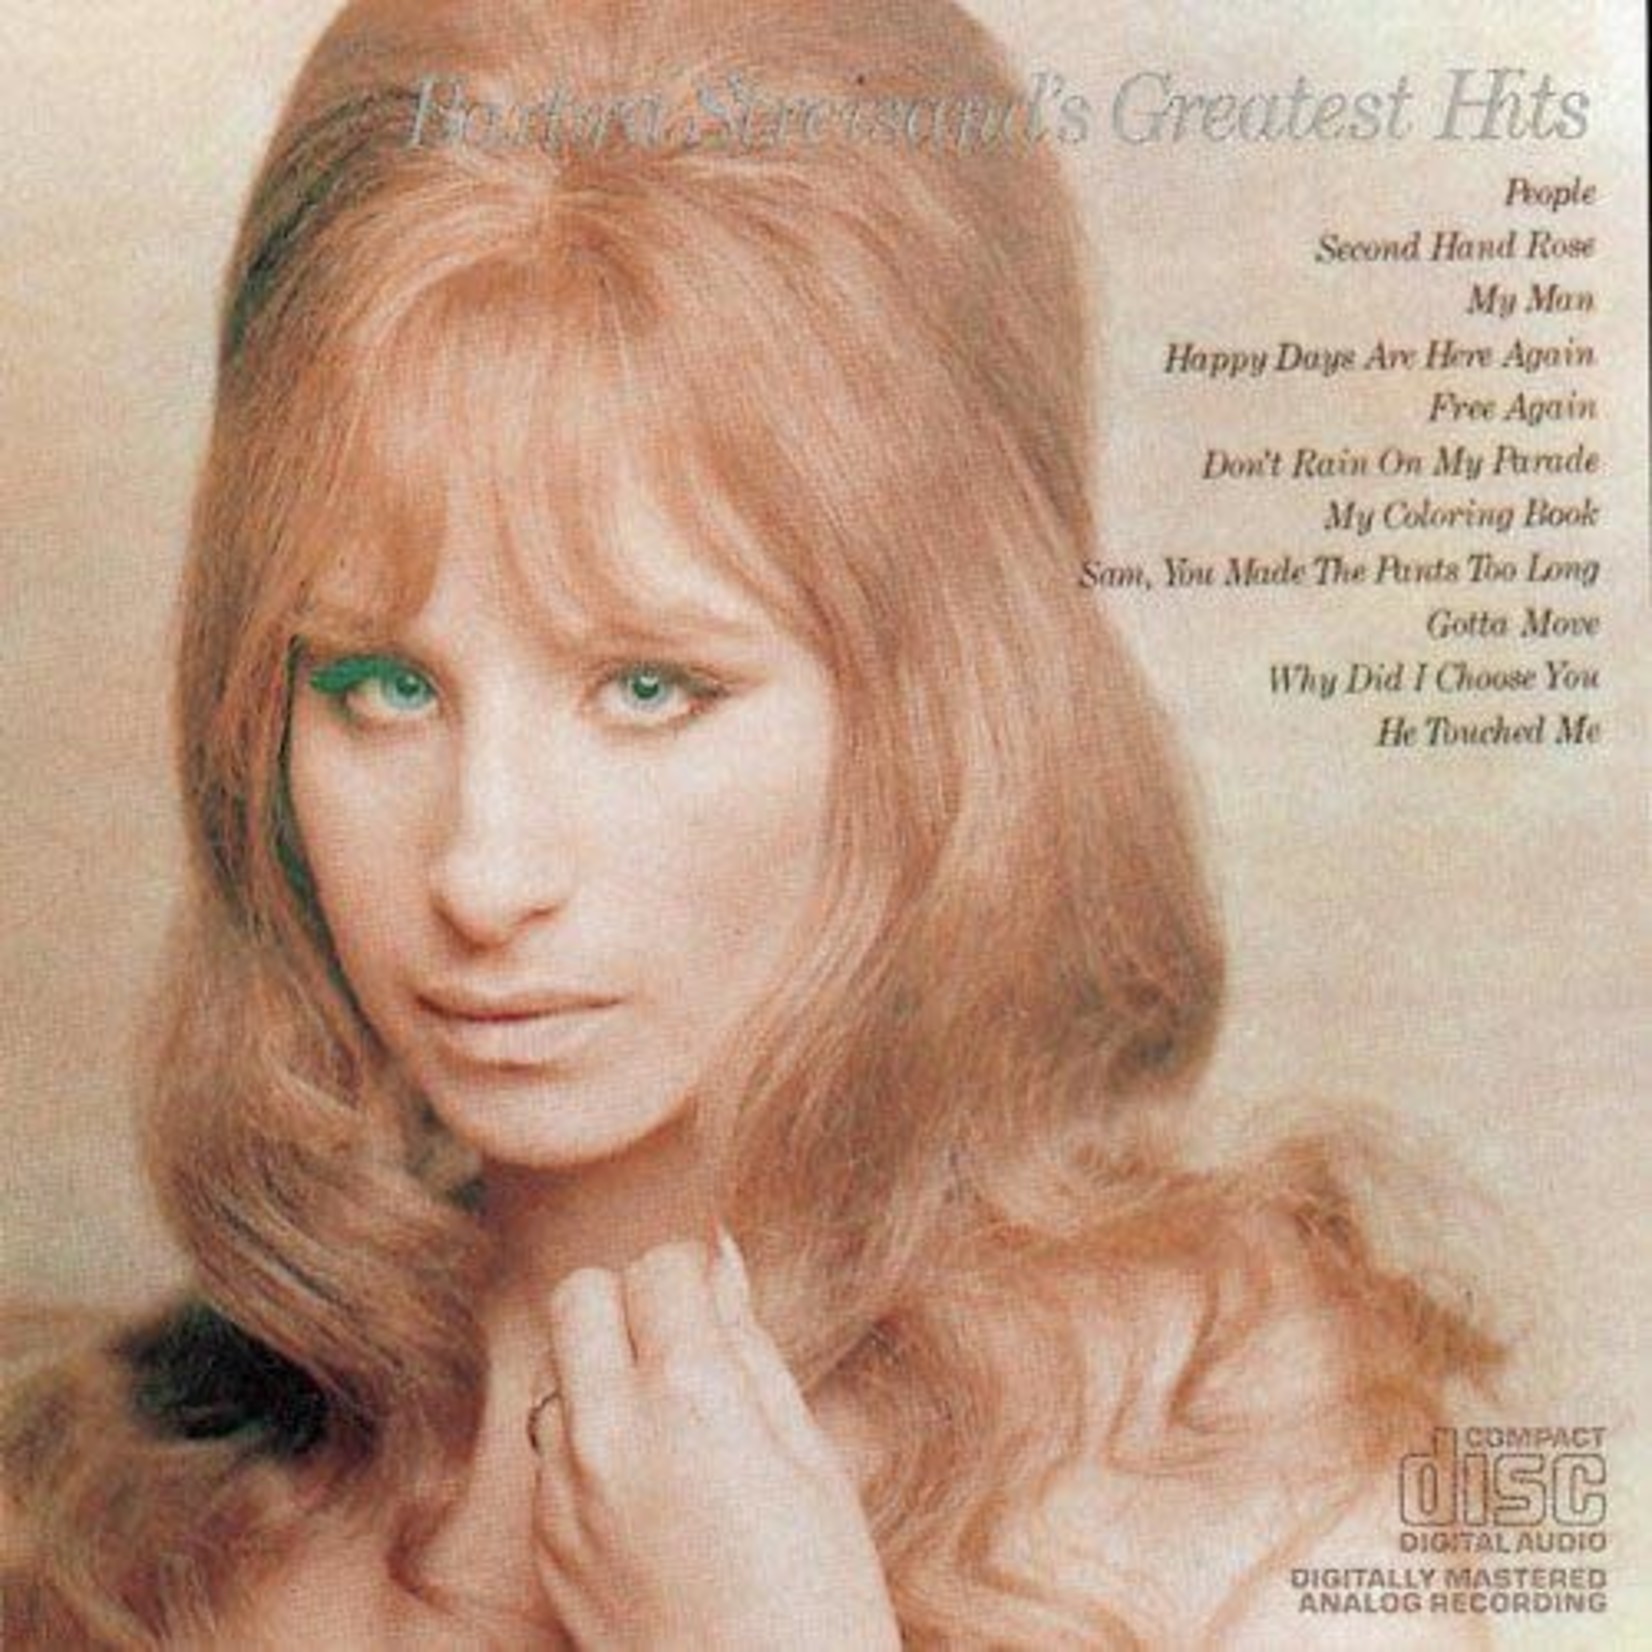 Barbra Streisand - Barbra Streisand's Greatest Hits [USED CD]